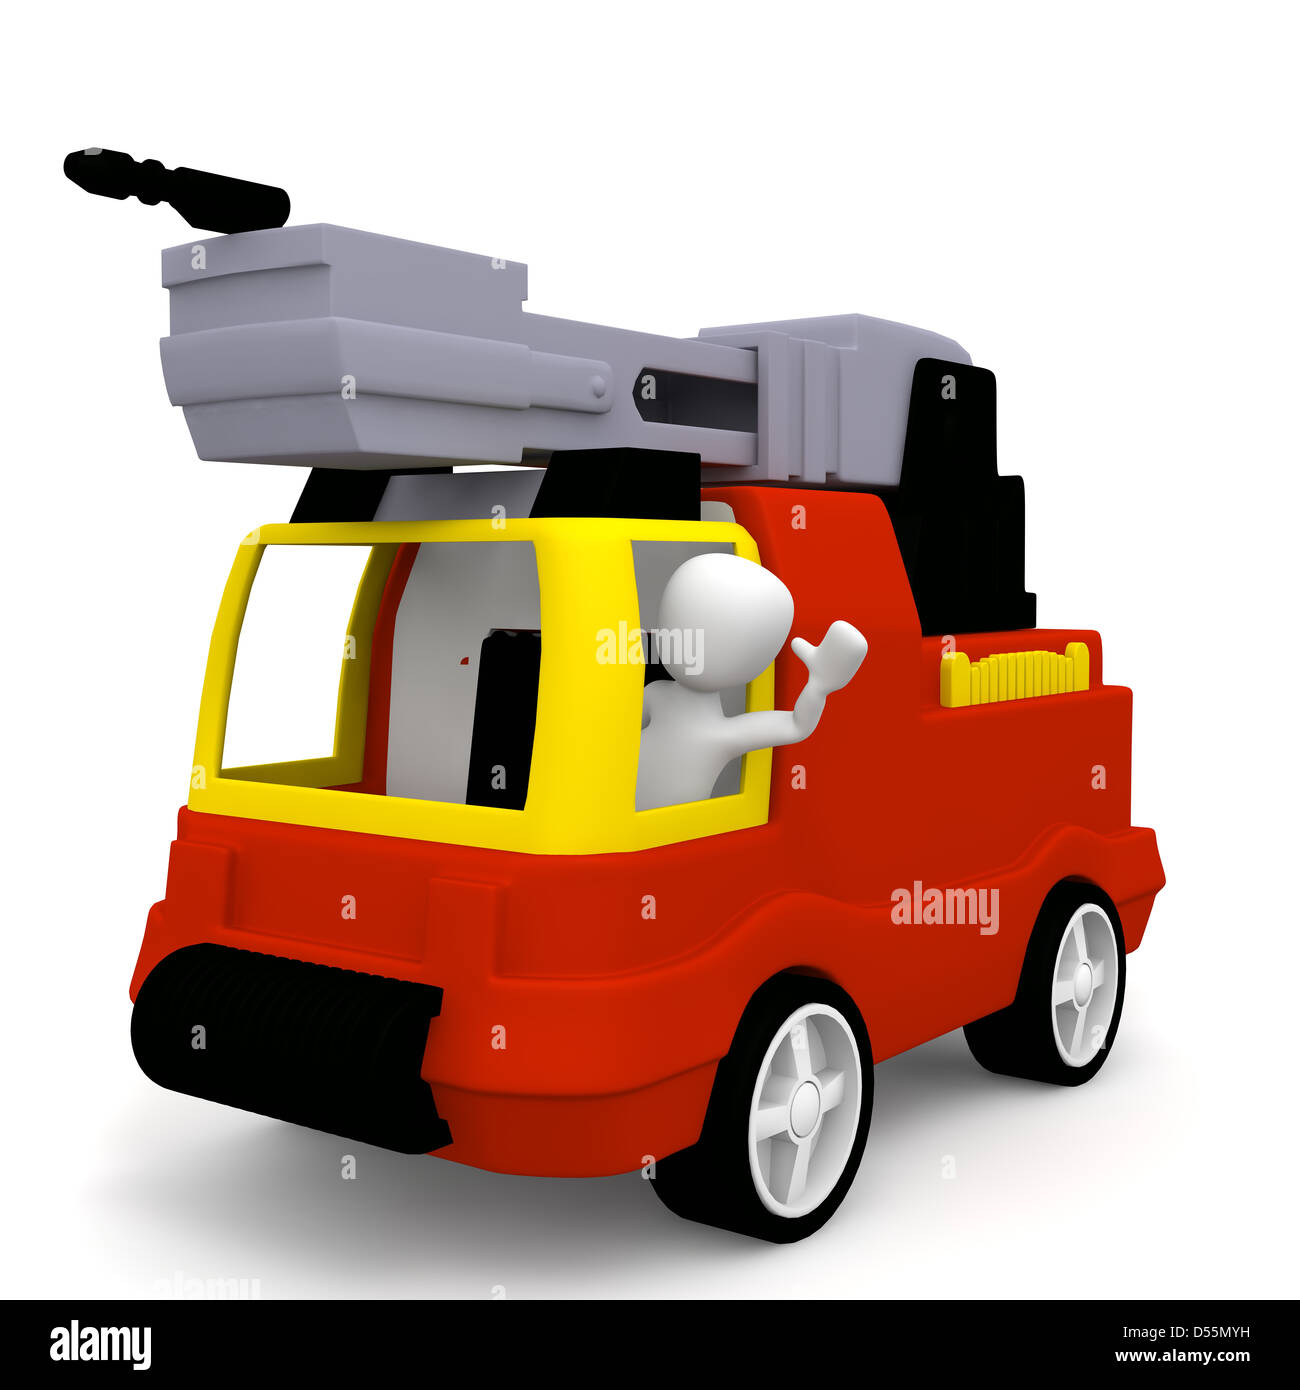 Le camion de pompiers est un jouet à chaque enfant aime jouer Banque D'Images